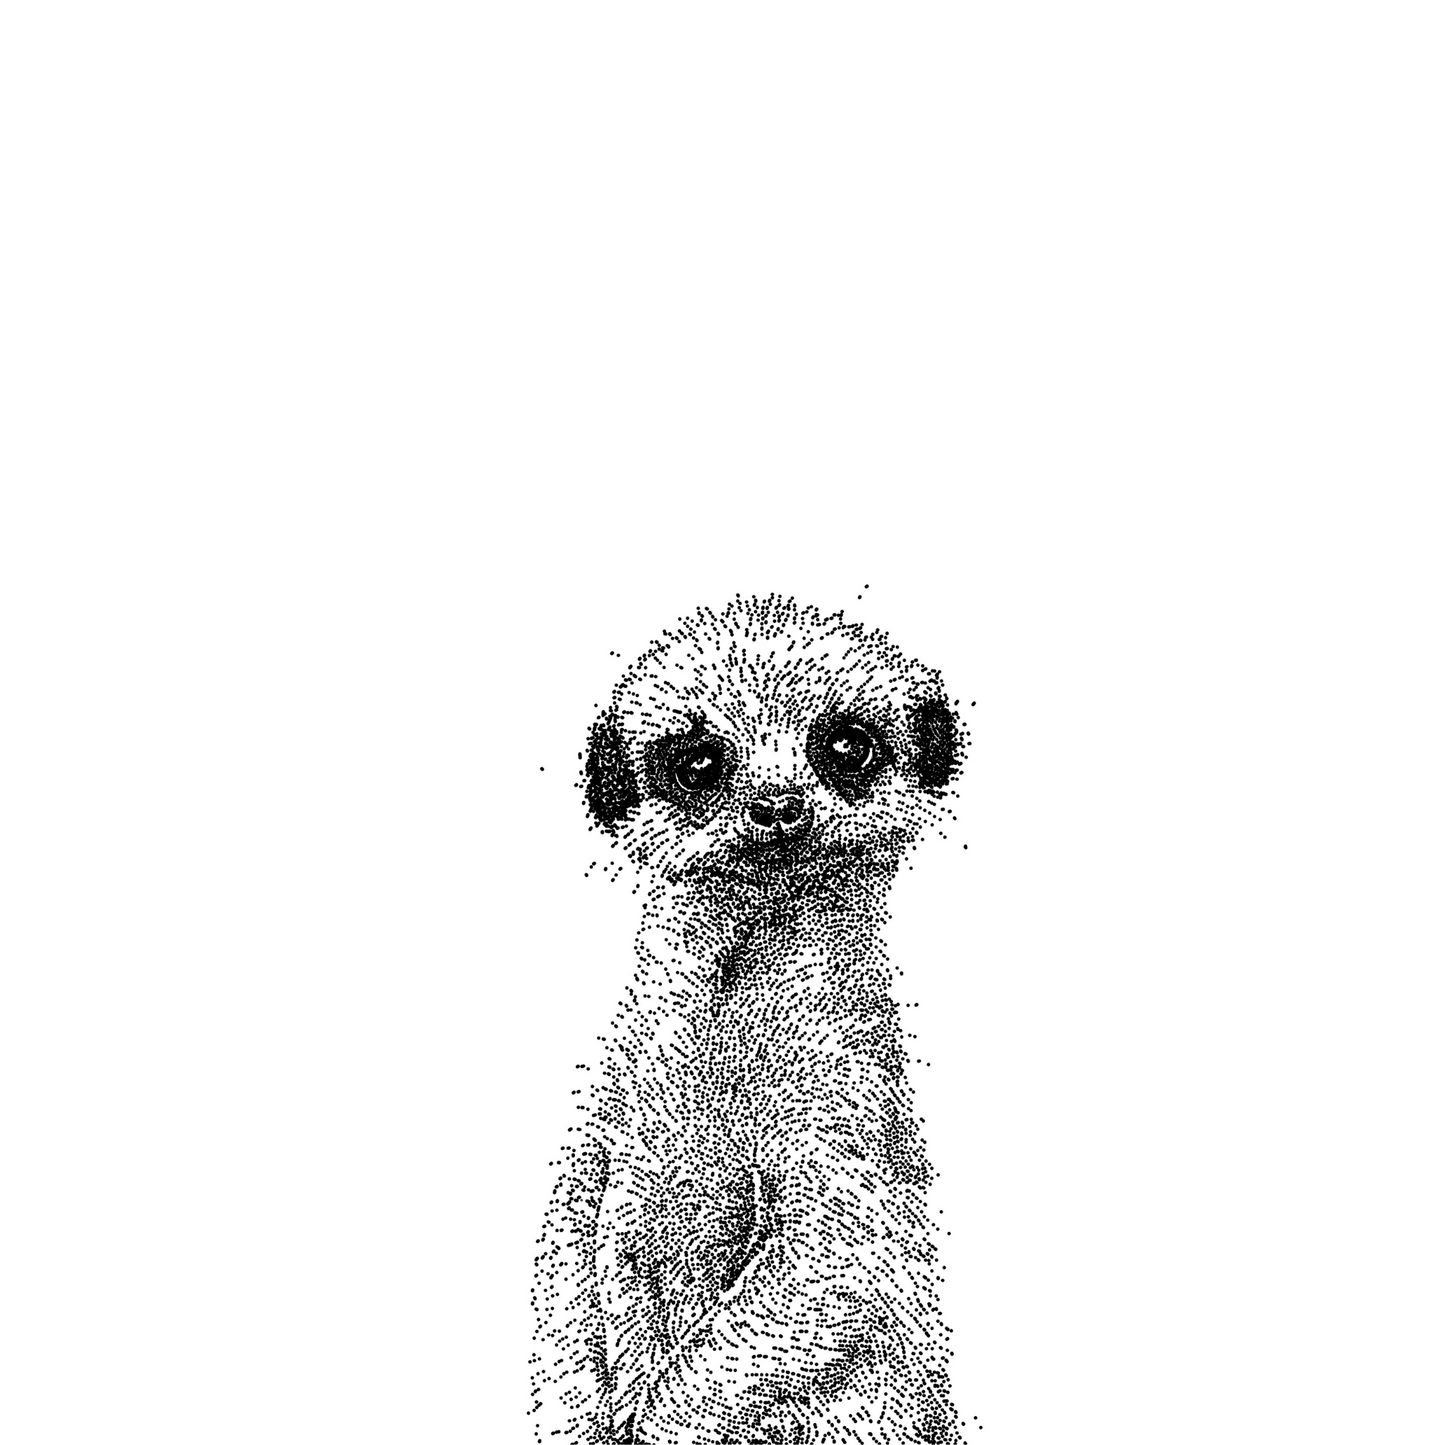 Meerkat Greeting Card